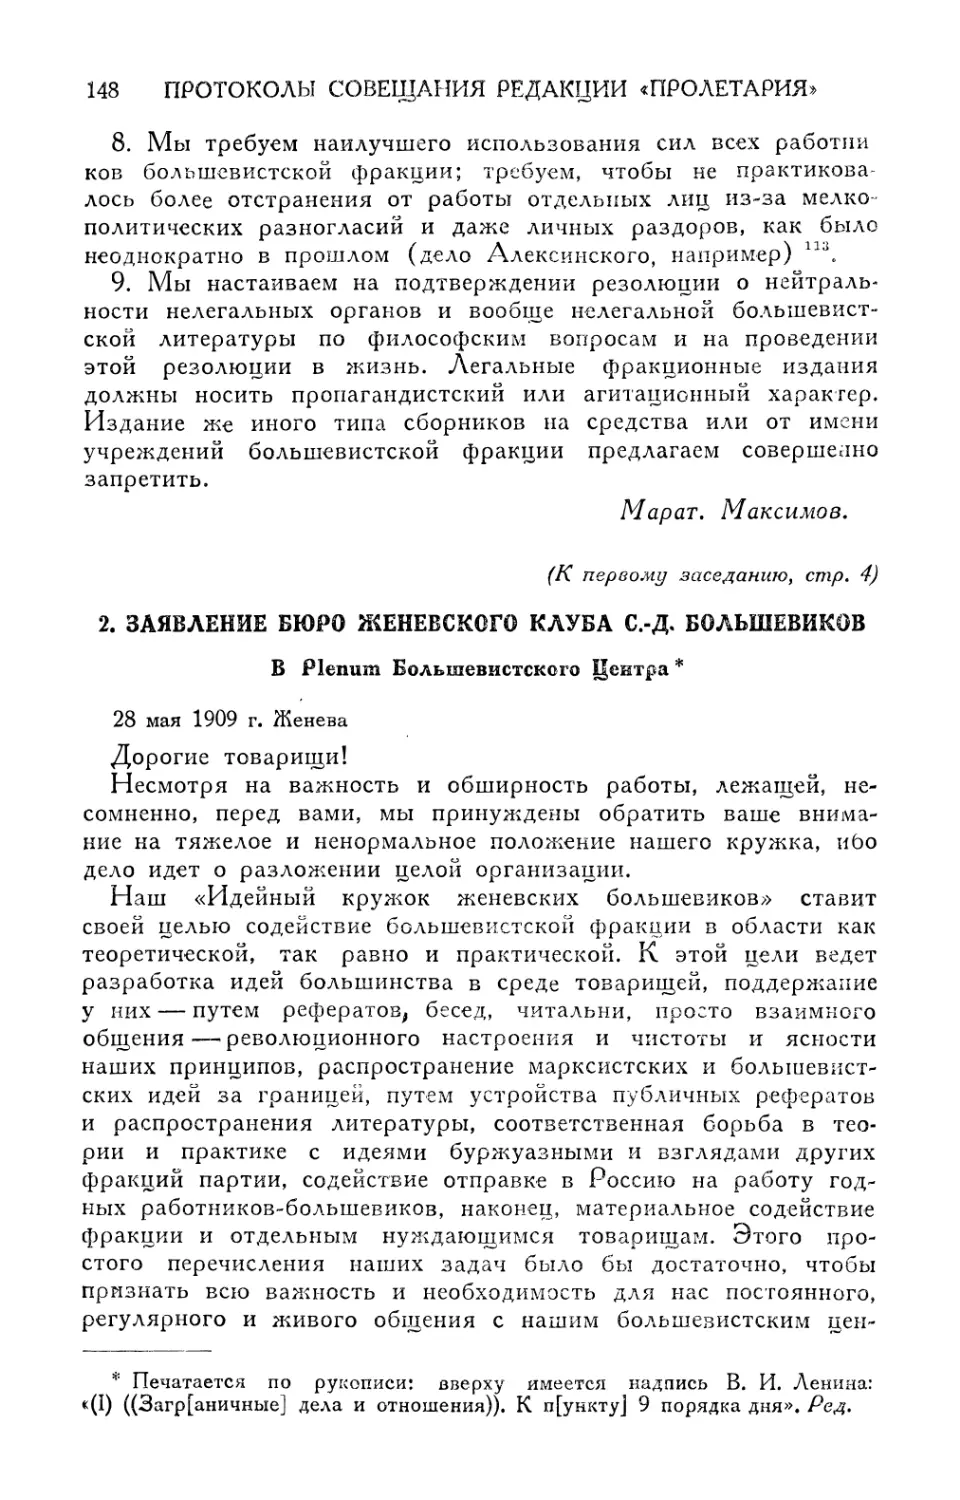 2. Заявление Бюро Женевского клуба с.-д. большевиков 28 мая 1909 г. Женева